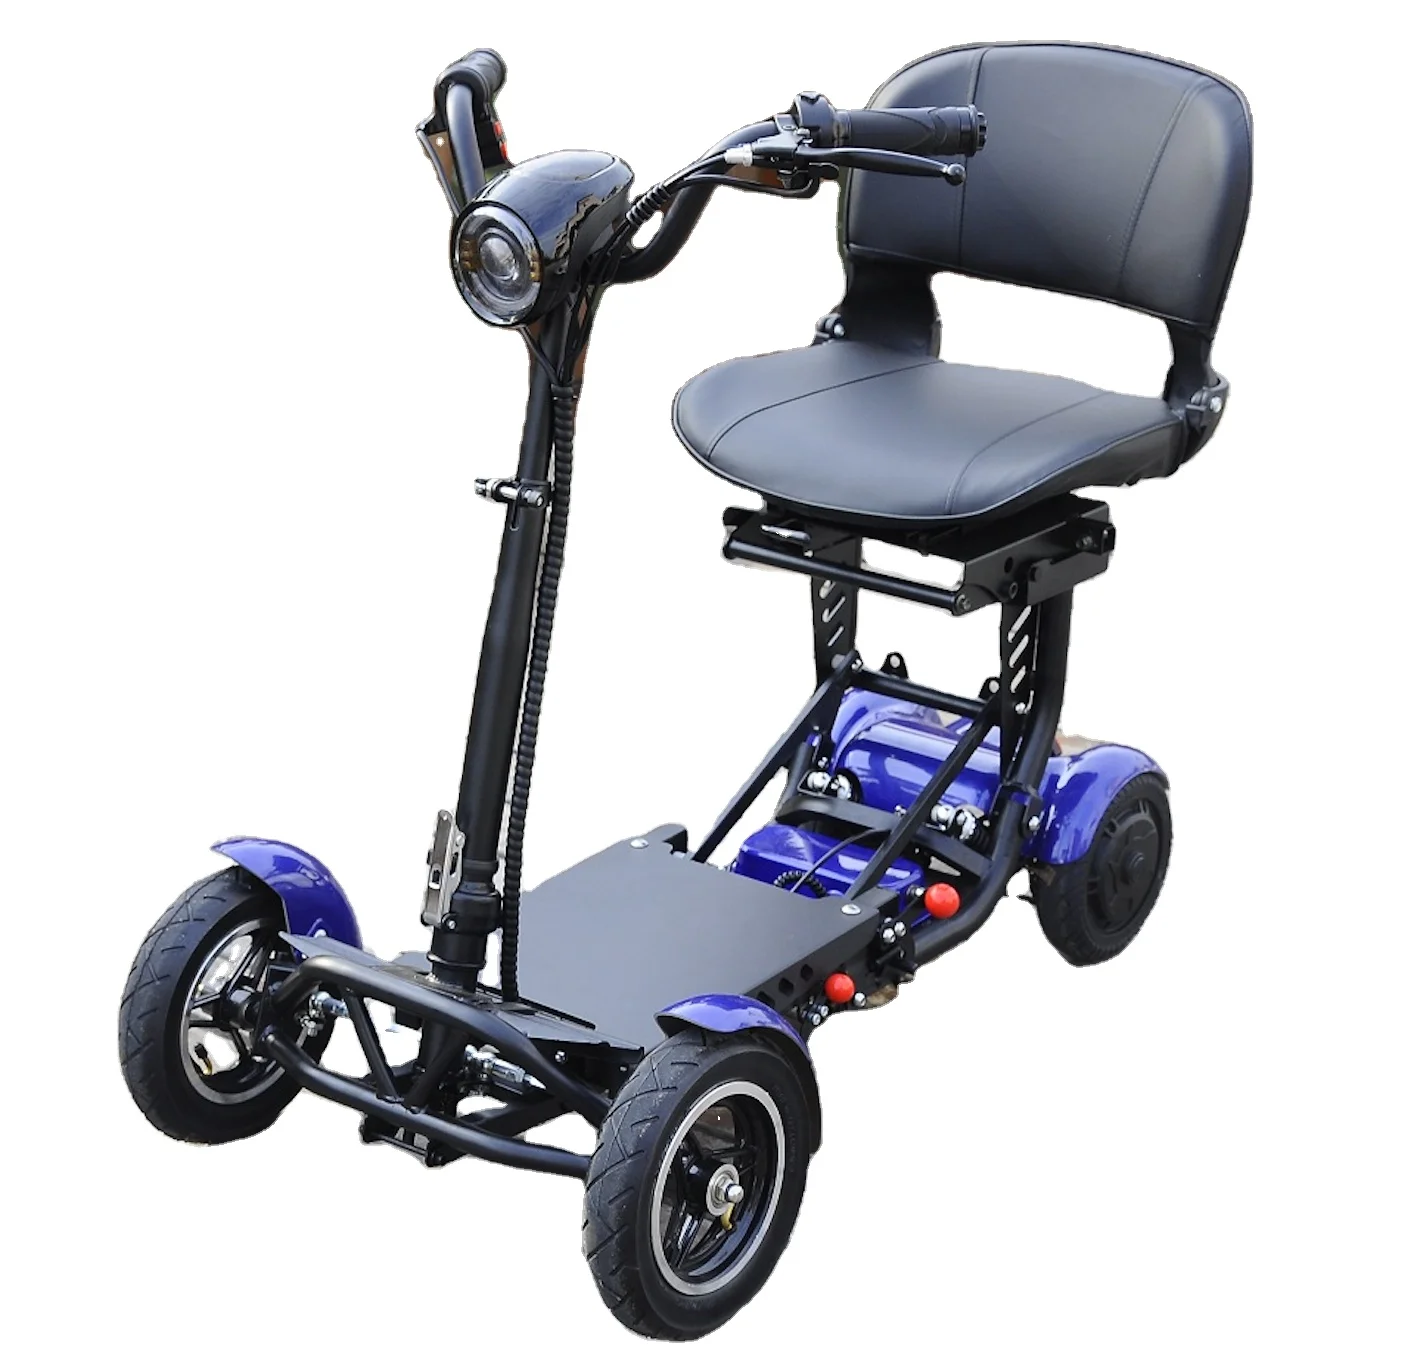 

Легкий складной 4-х колесный мобильный скутер для взрослых с электрическими ограниченными возможностями